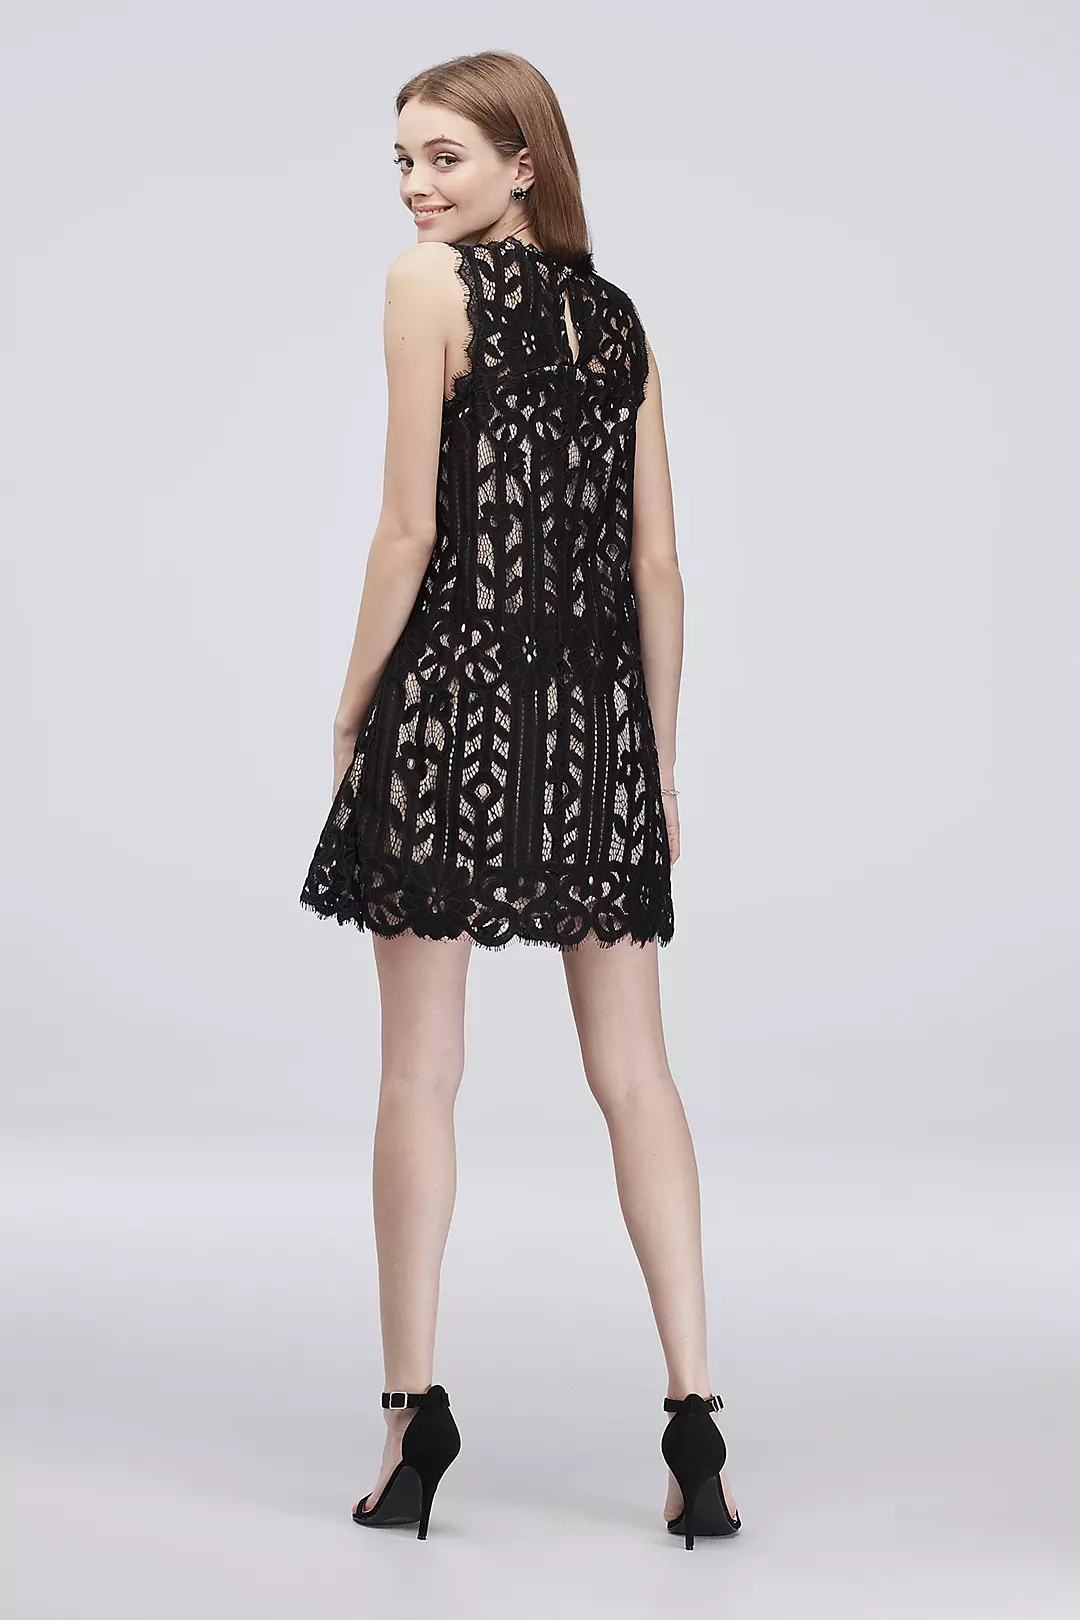 Sleeveless Lace Short Dress with Eyelash Trim Image 2